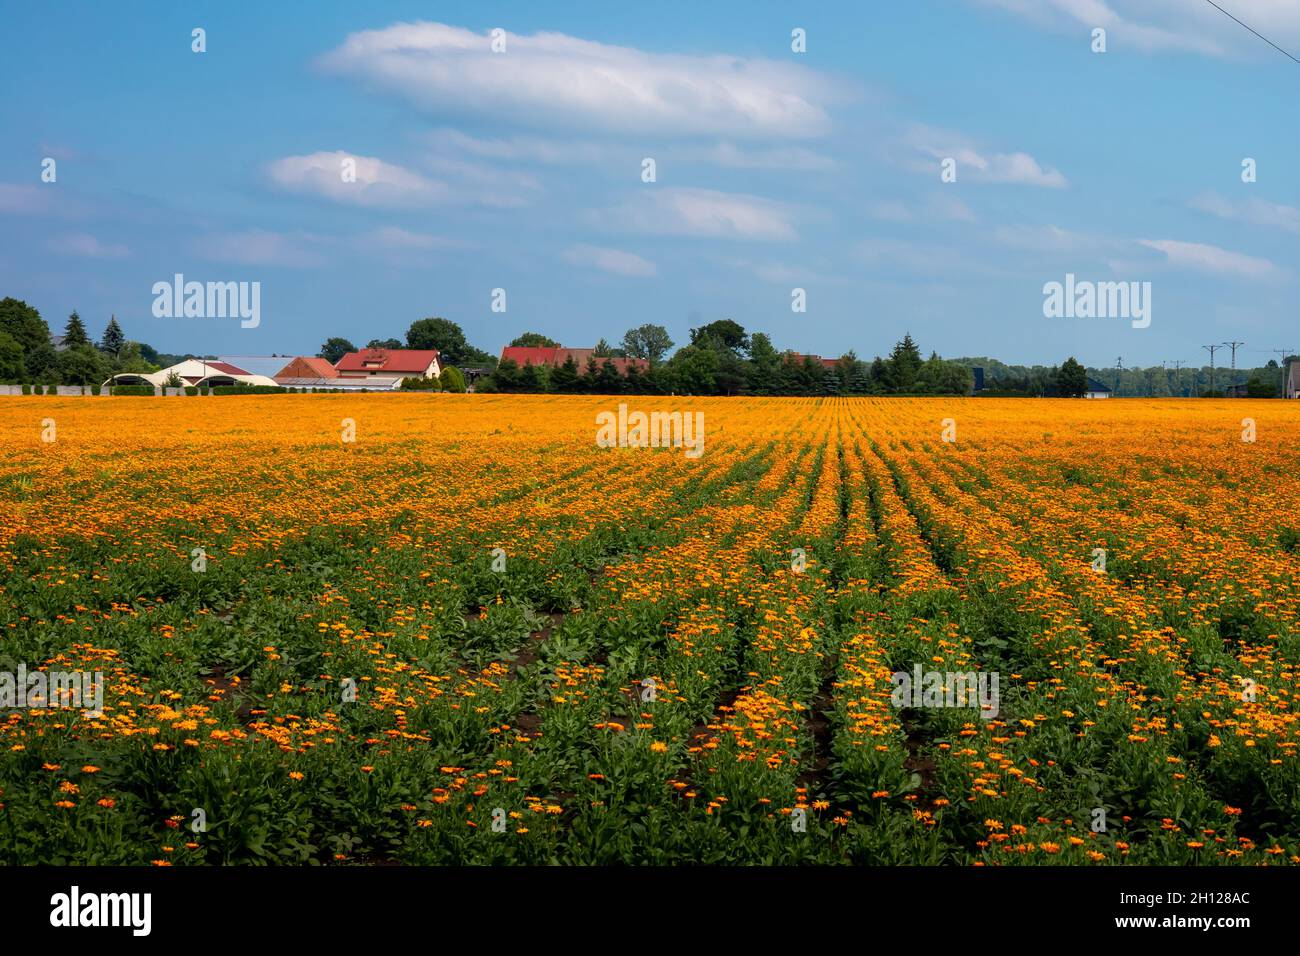 Ein Feld blühender orangefarbener Ringelblumenblüten, Calendula officinalis, Niederschlesien, Polen. Sonniger Tag, blauer Himmel. Stockfoto